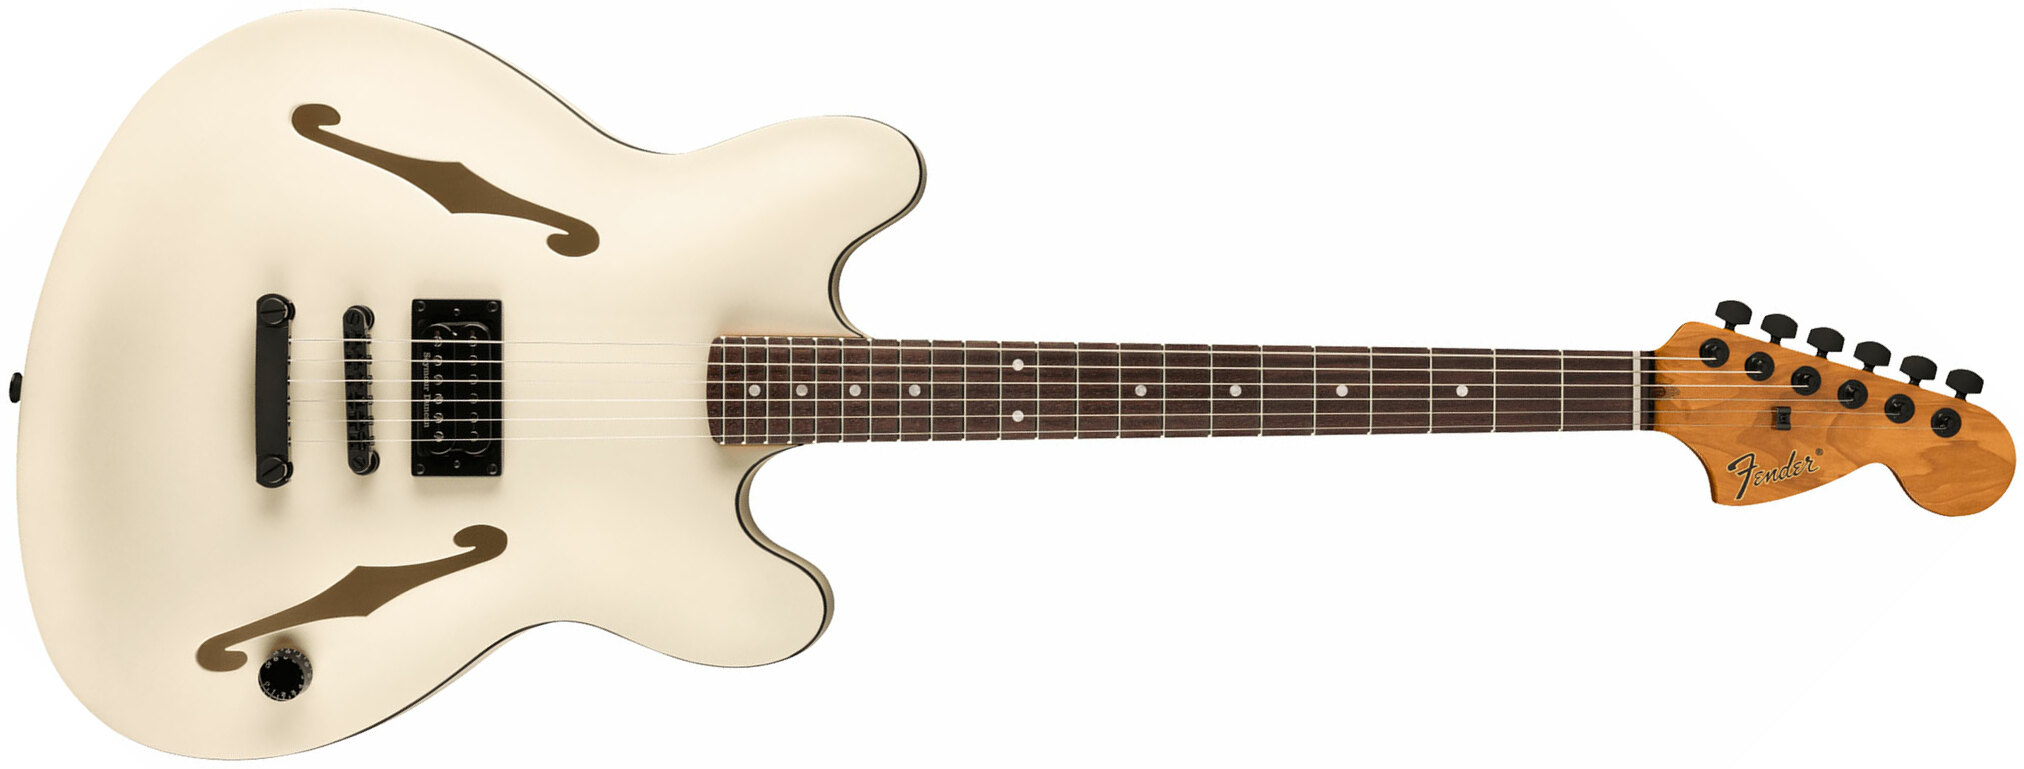 Fender Tom Delonge Starcaster Signature 1h Seymour Duncan Ht Rw - Satin Olympic White - Guitare Électrique 1/2 Caisse - Main picture